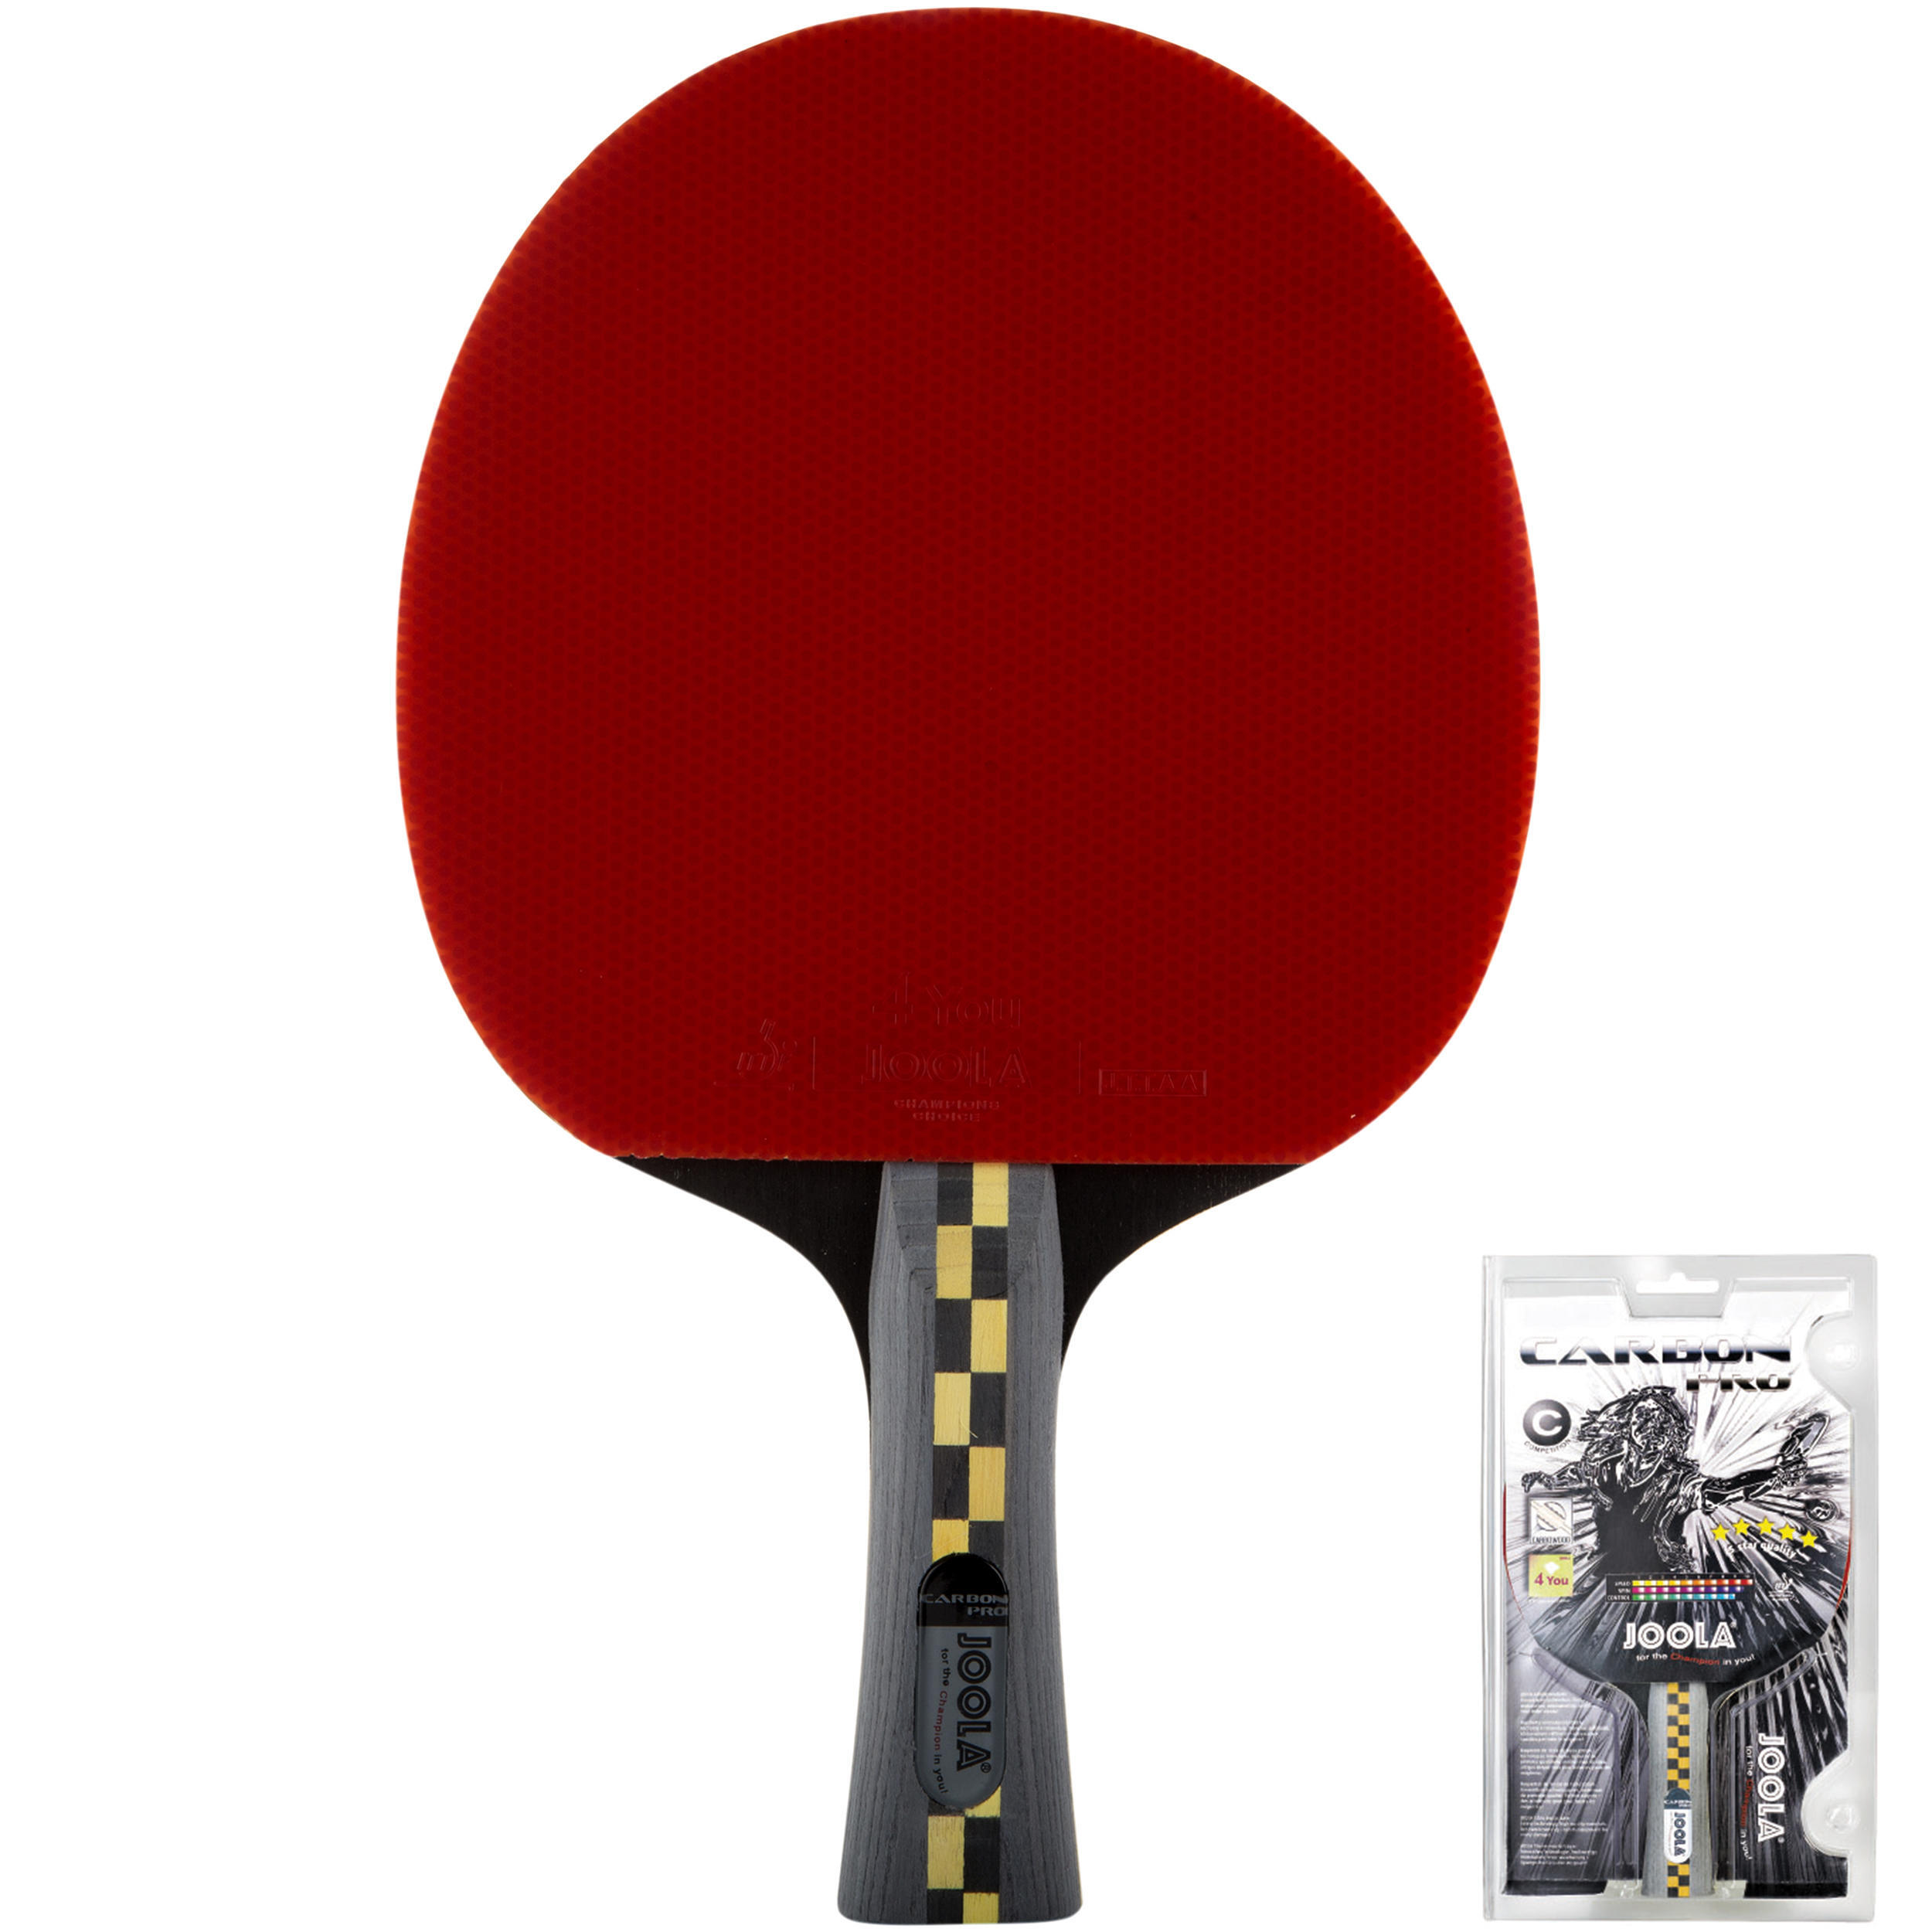 Клубная ракетка для настольного тенниса Carbon Pro 5* JOOLA ракетка для настольного тенниса joola carbon pro